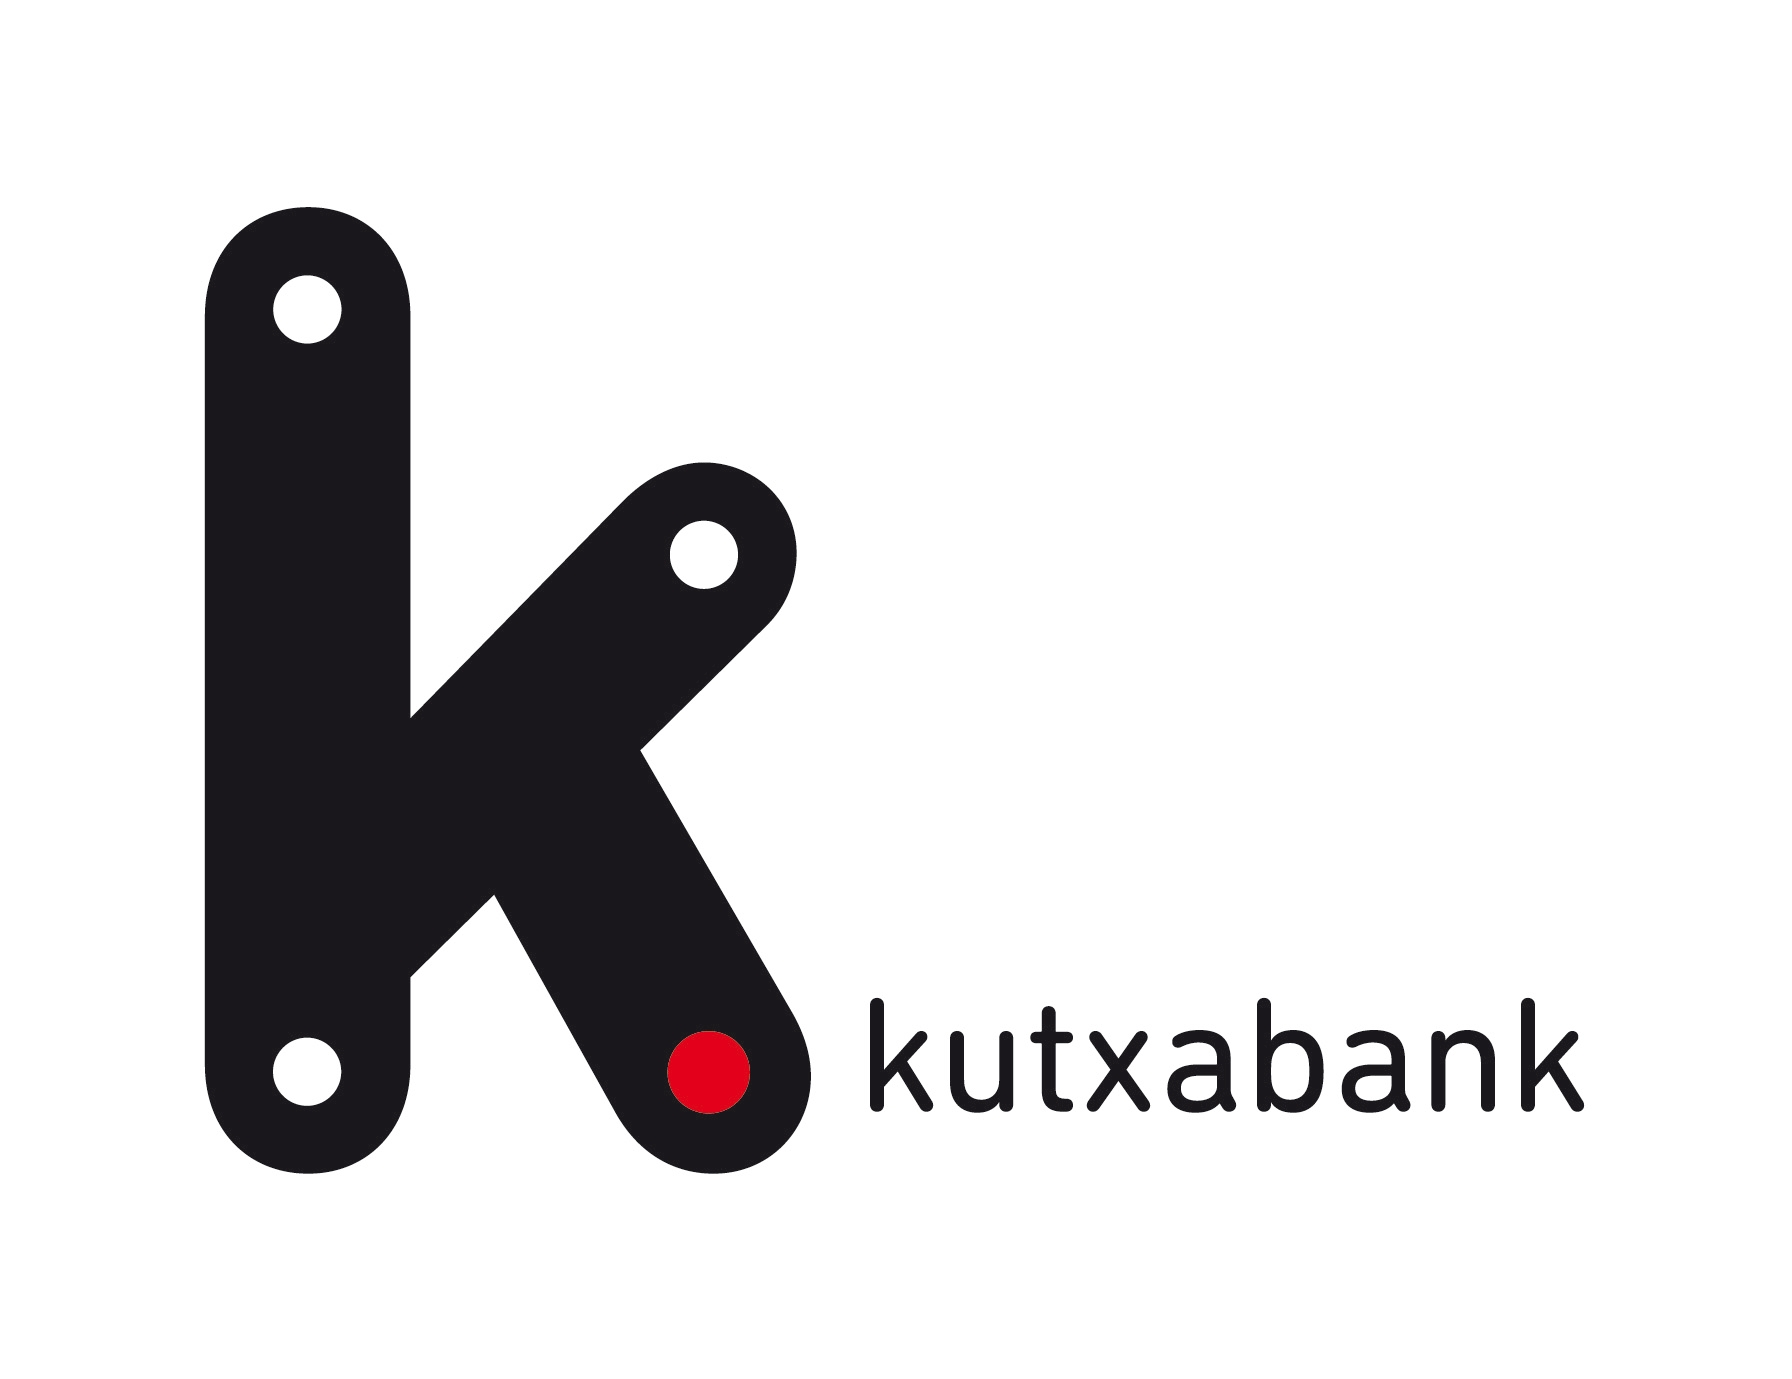 Kutxabank_01_col_pos.jpeg